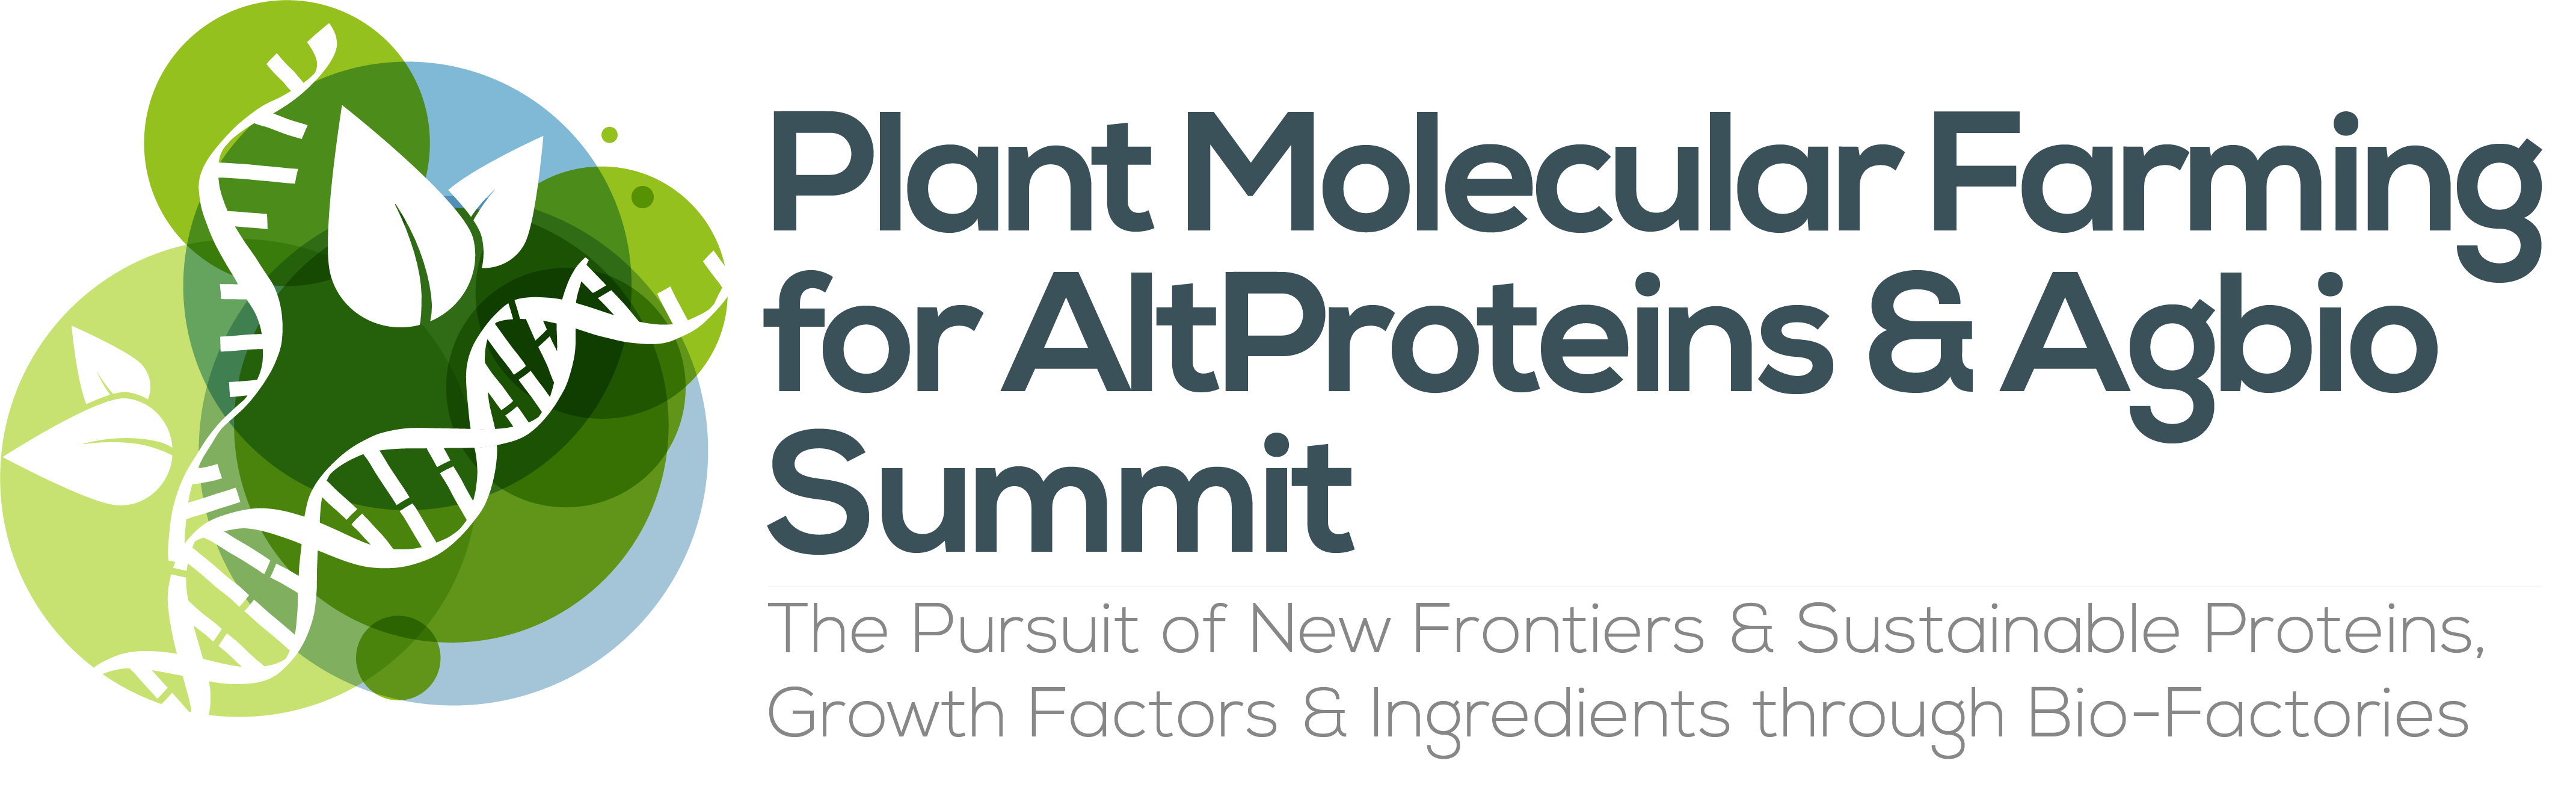 HW240117 50028 Plant Molecular Farming for AltProteins & Cellular Agbio Summit logo FINAL